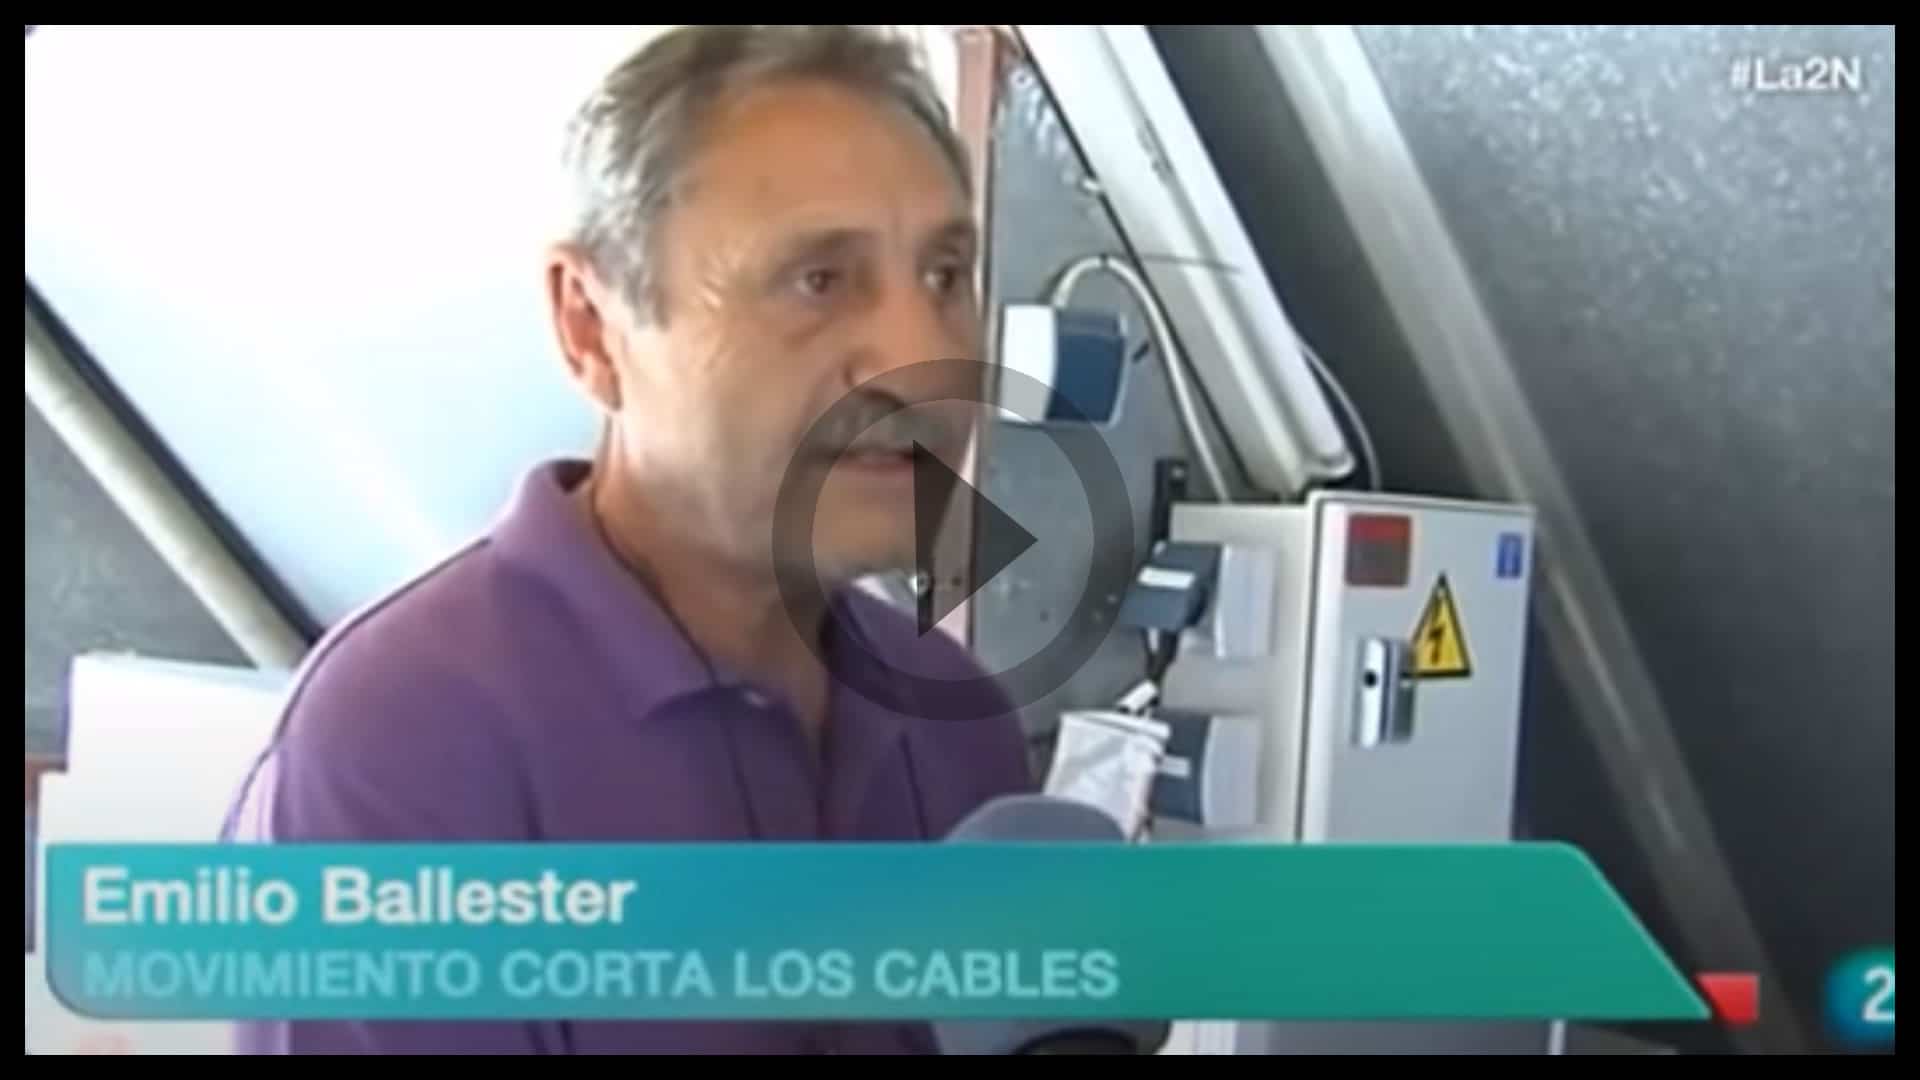 Emilio Ballester y Corta los Cables